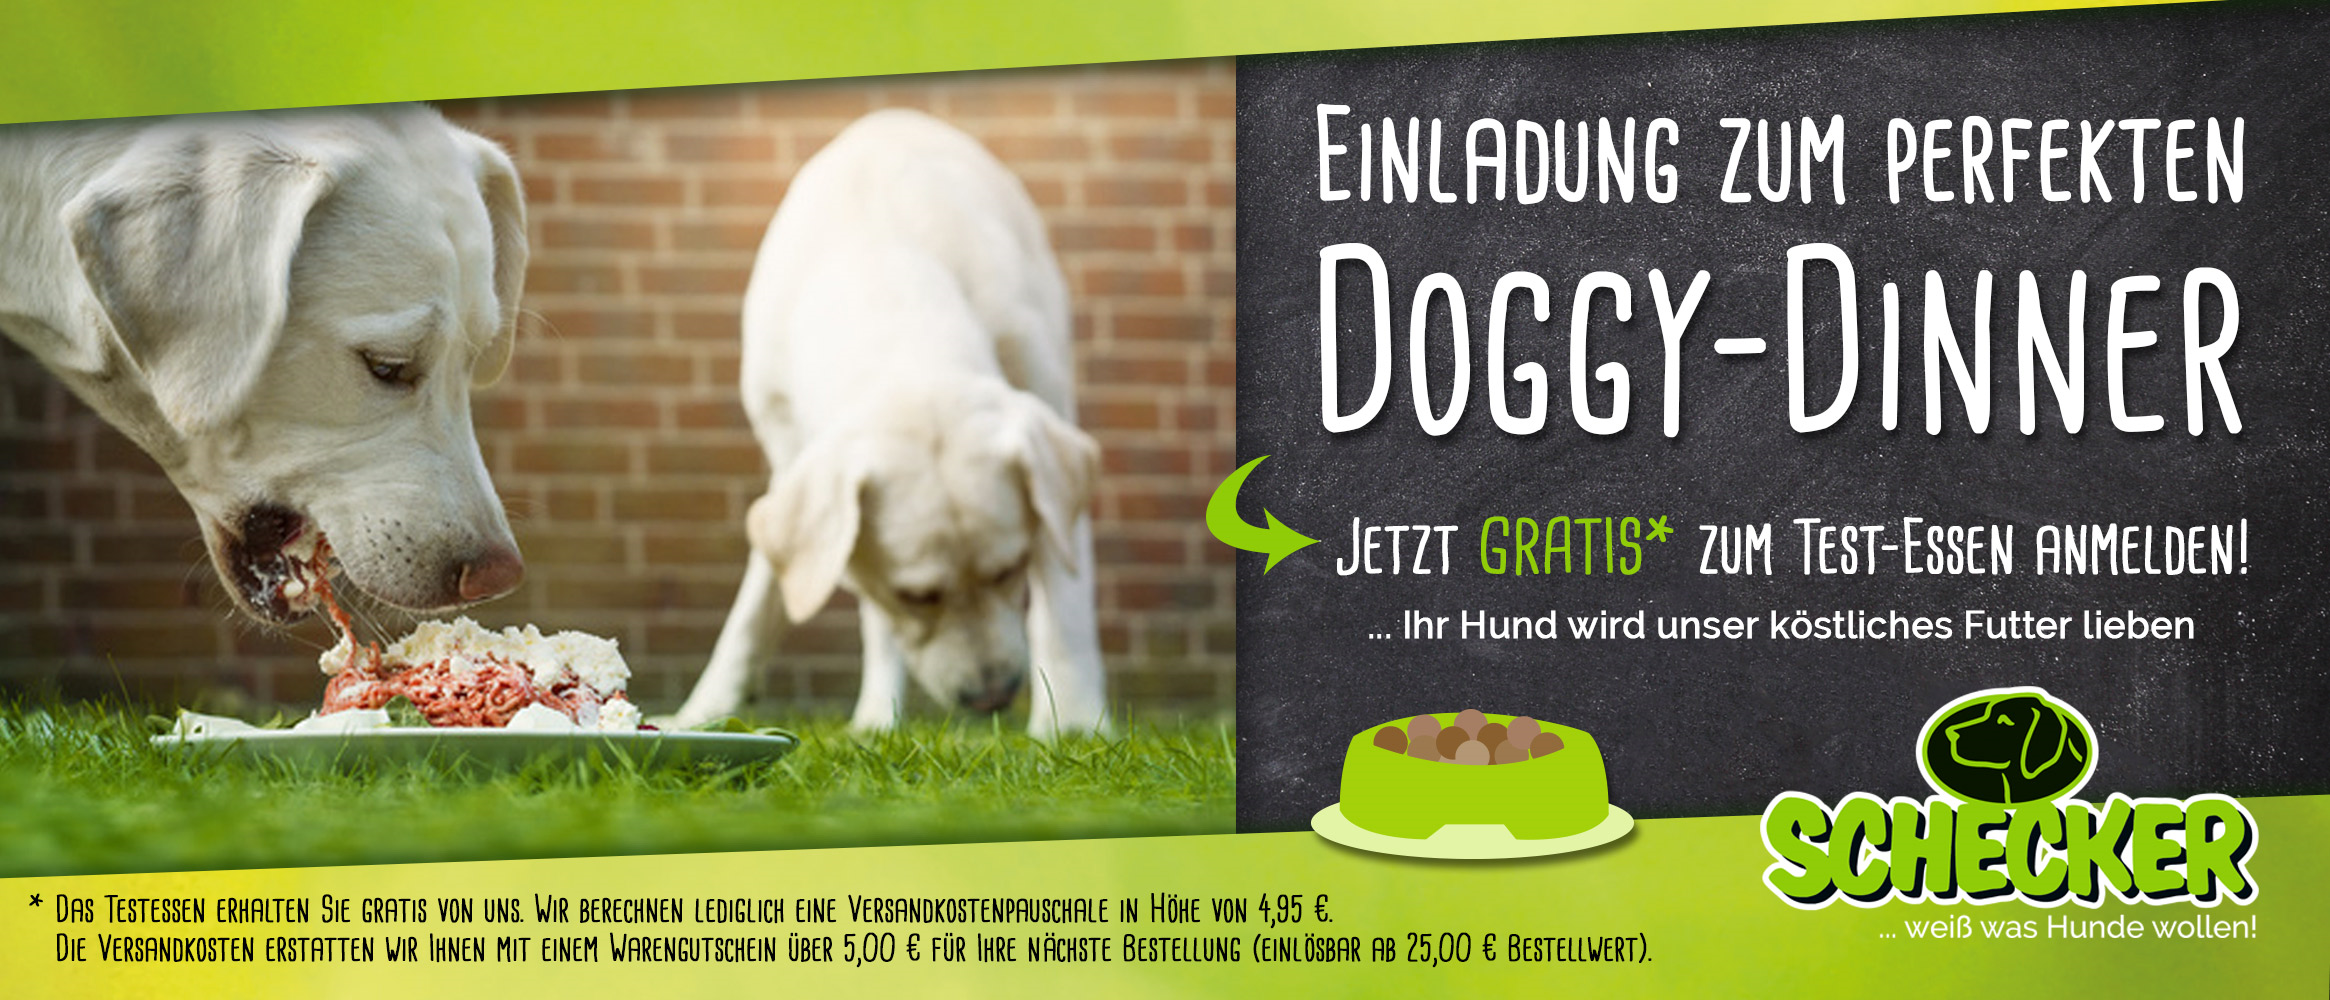 Doggy-dinner.de